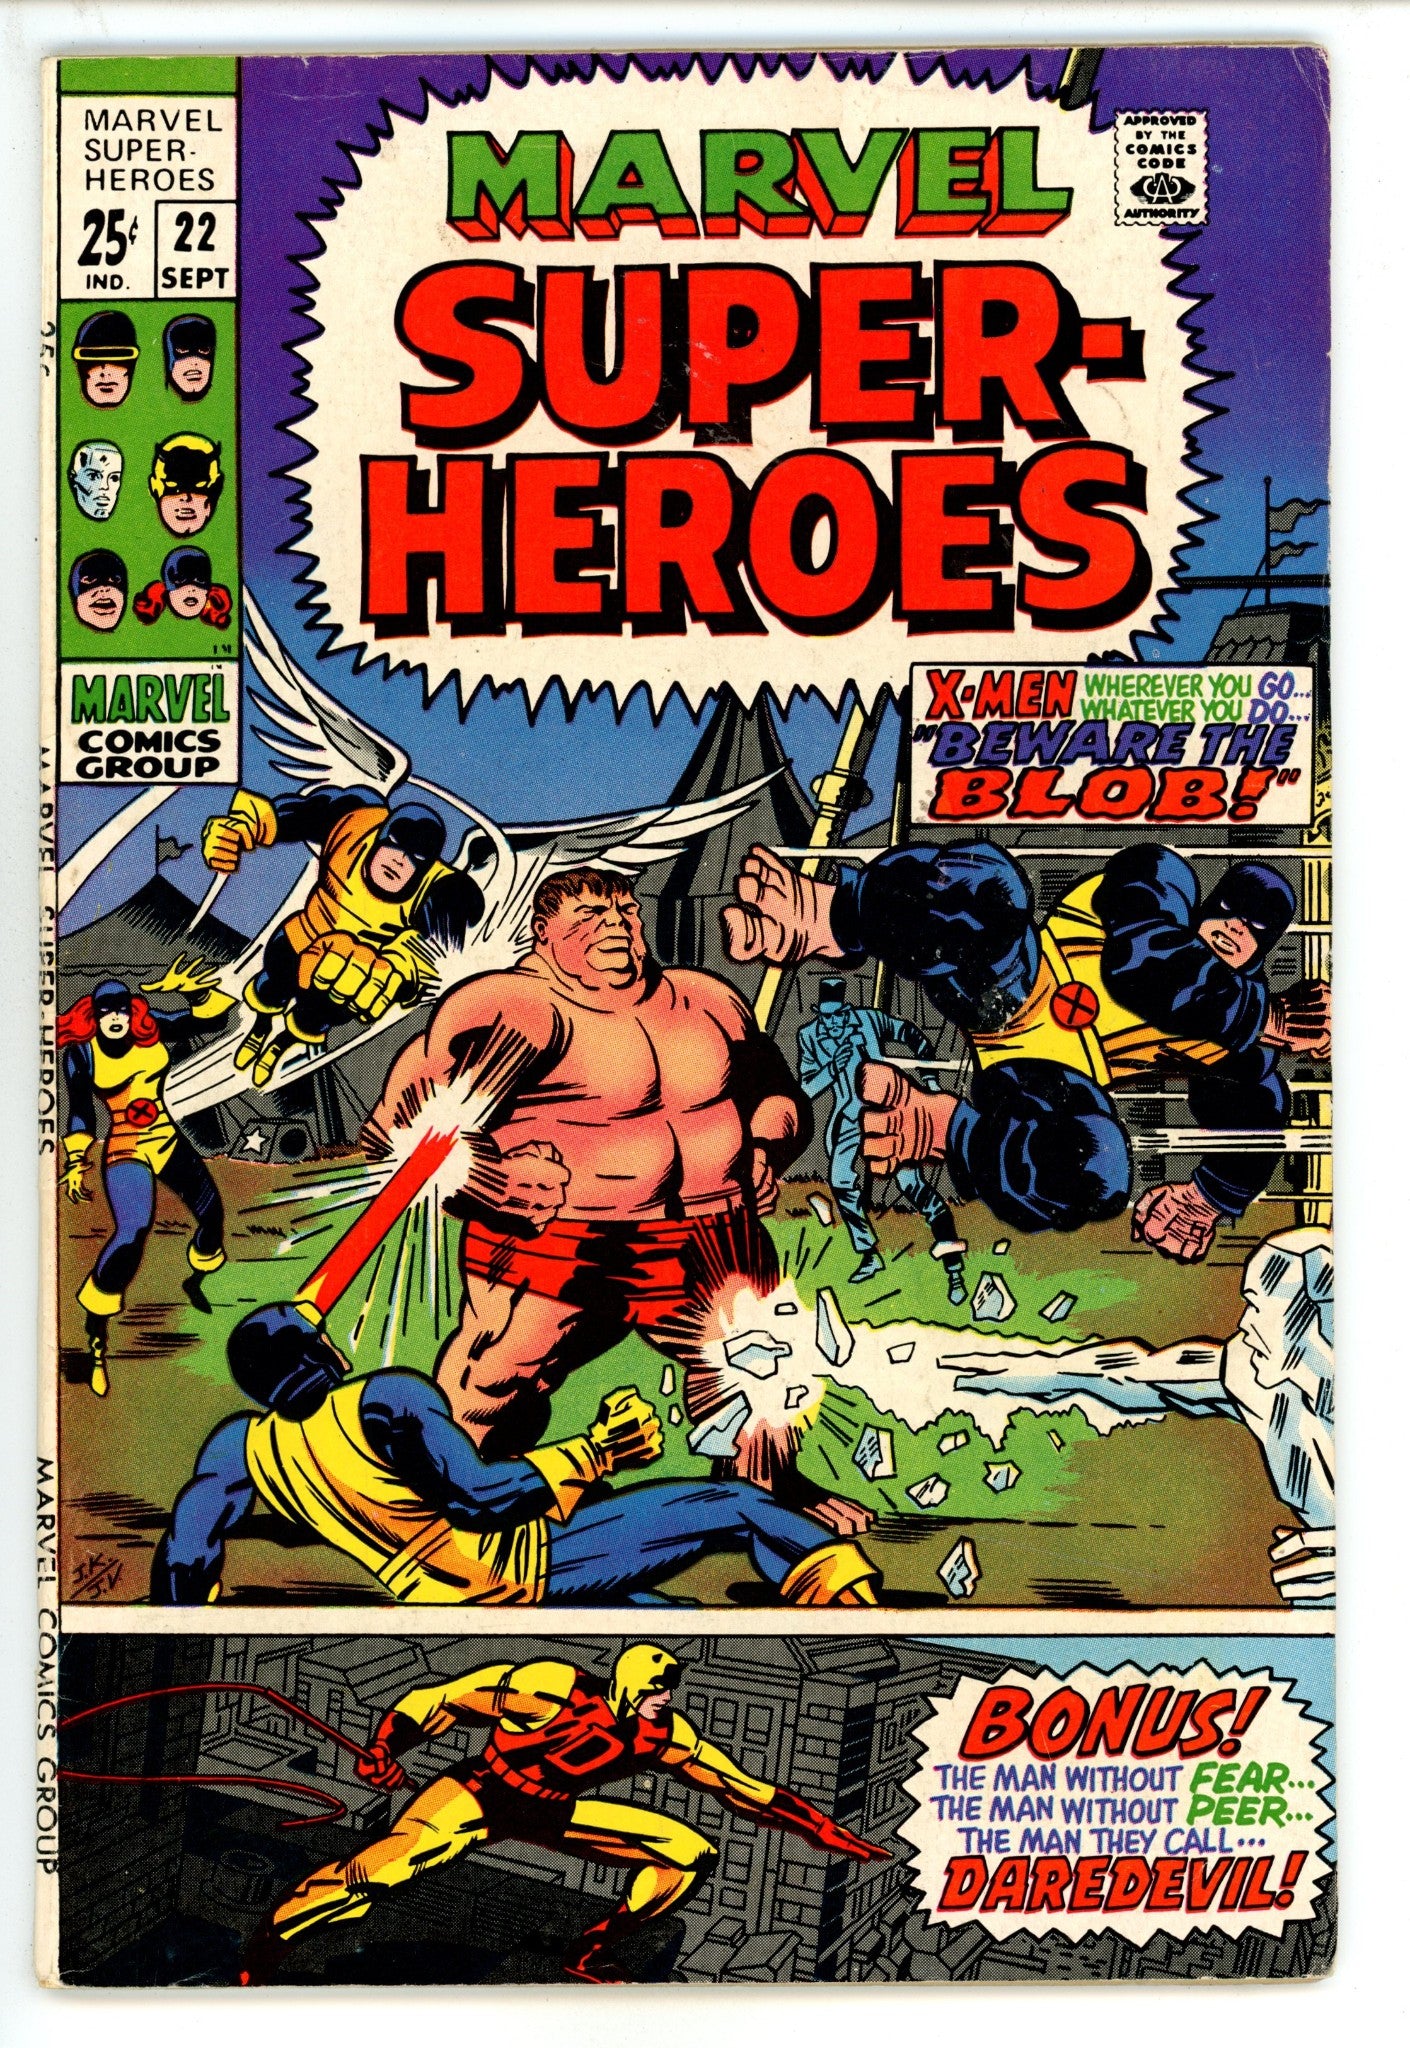 Marvel Super-Heroes Vol 1 22 VG/FN (5.0) (1969) 